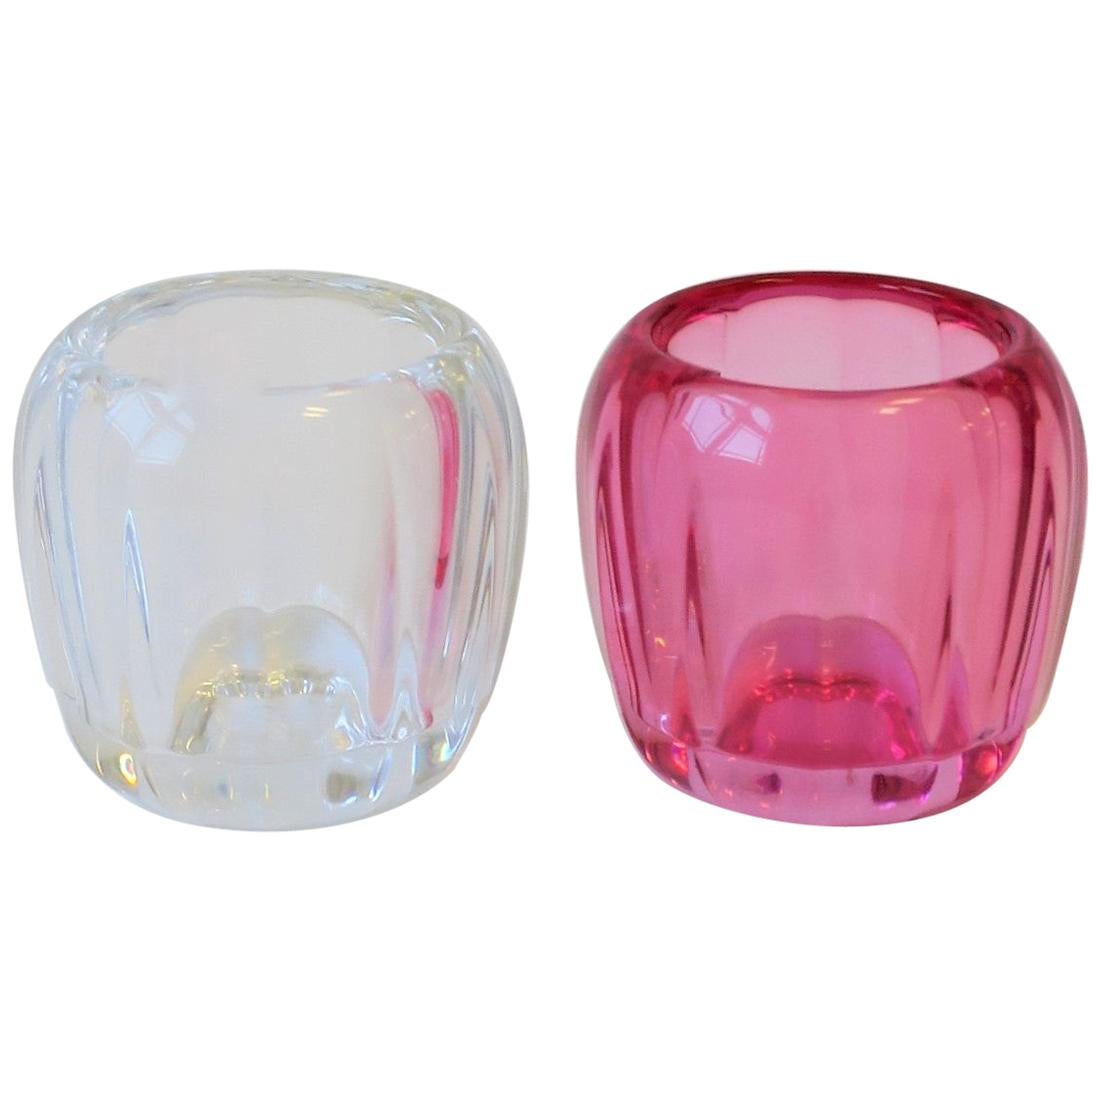 Porte-bougies Votive en cristal rose et transparent de Villeroy & Boch